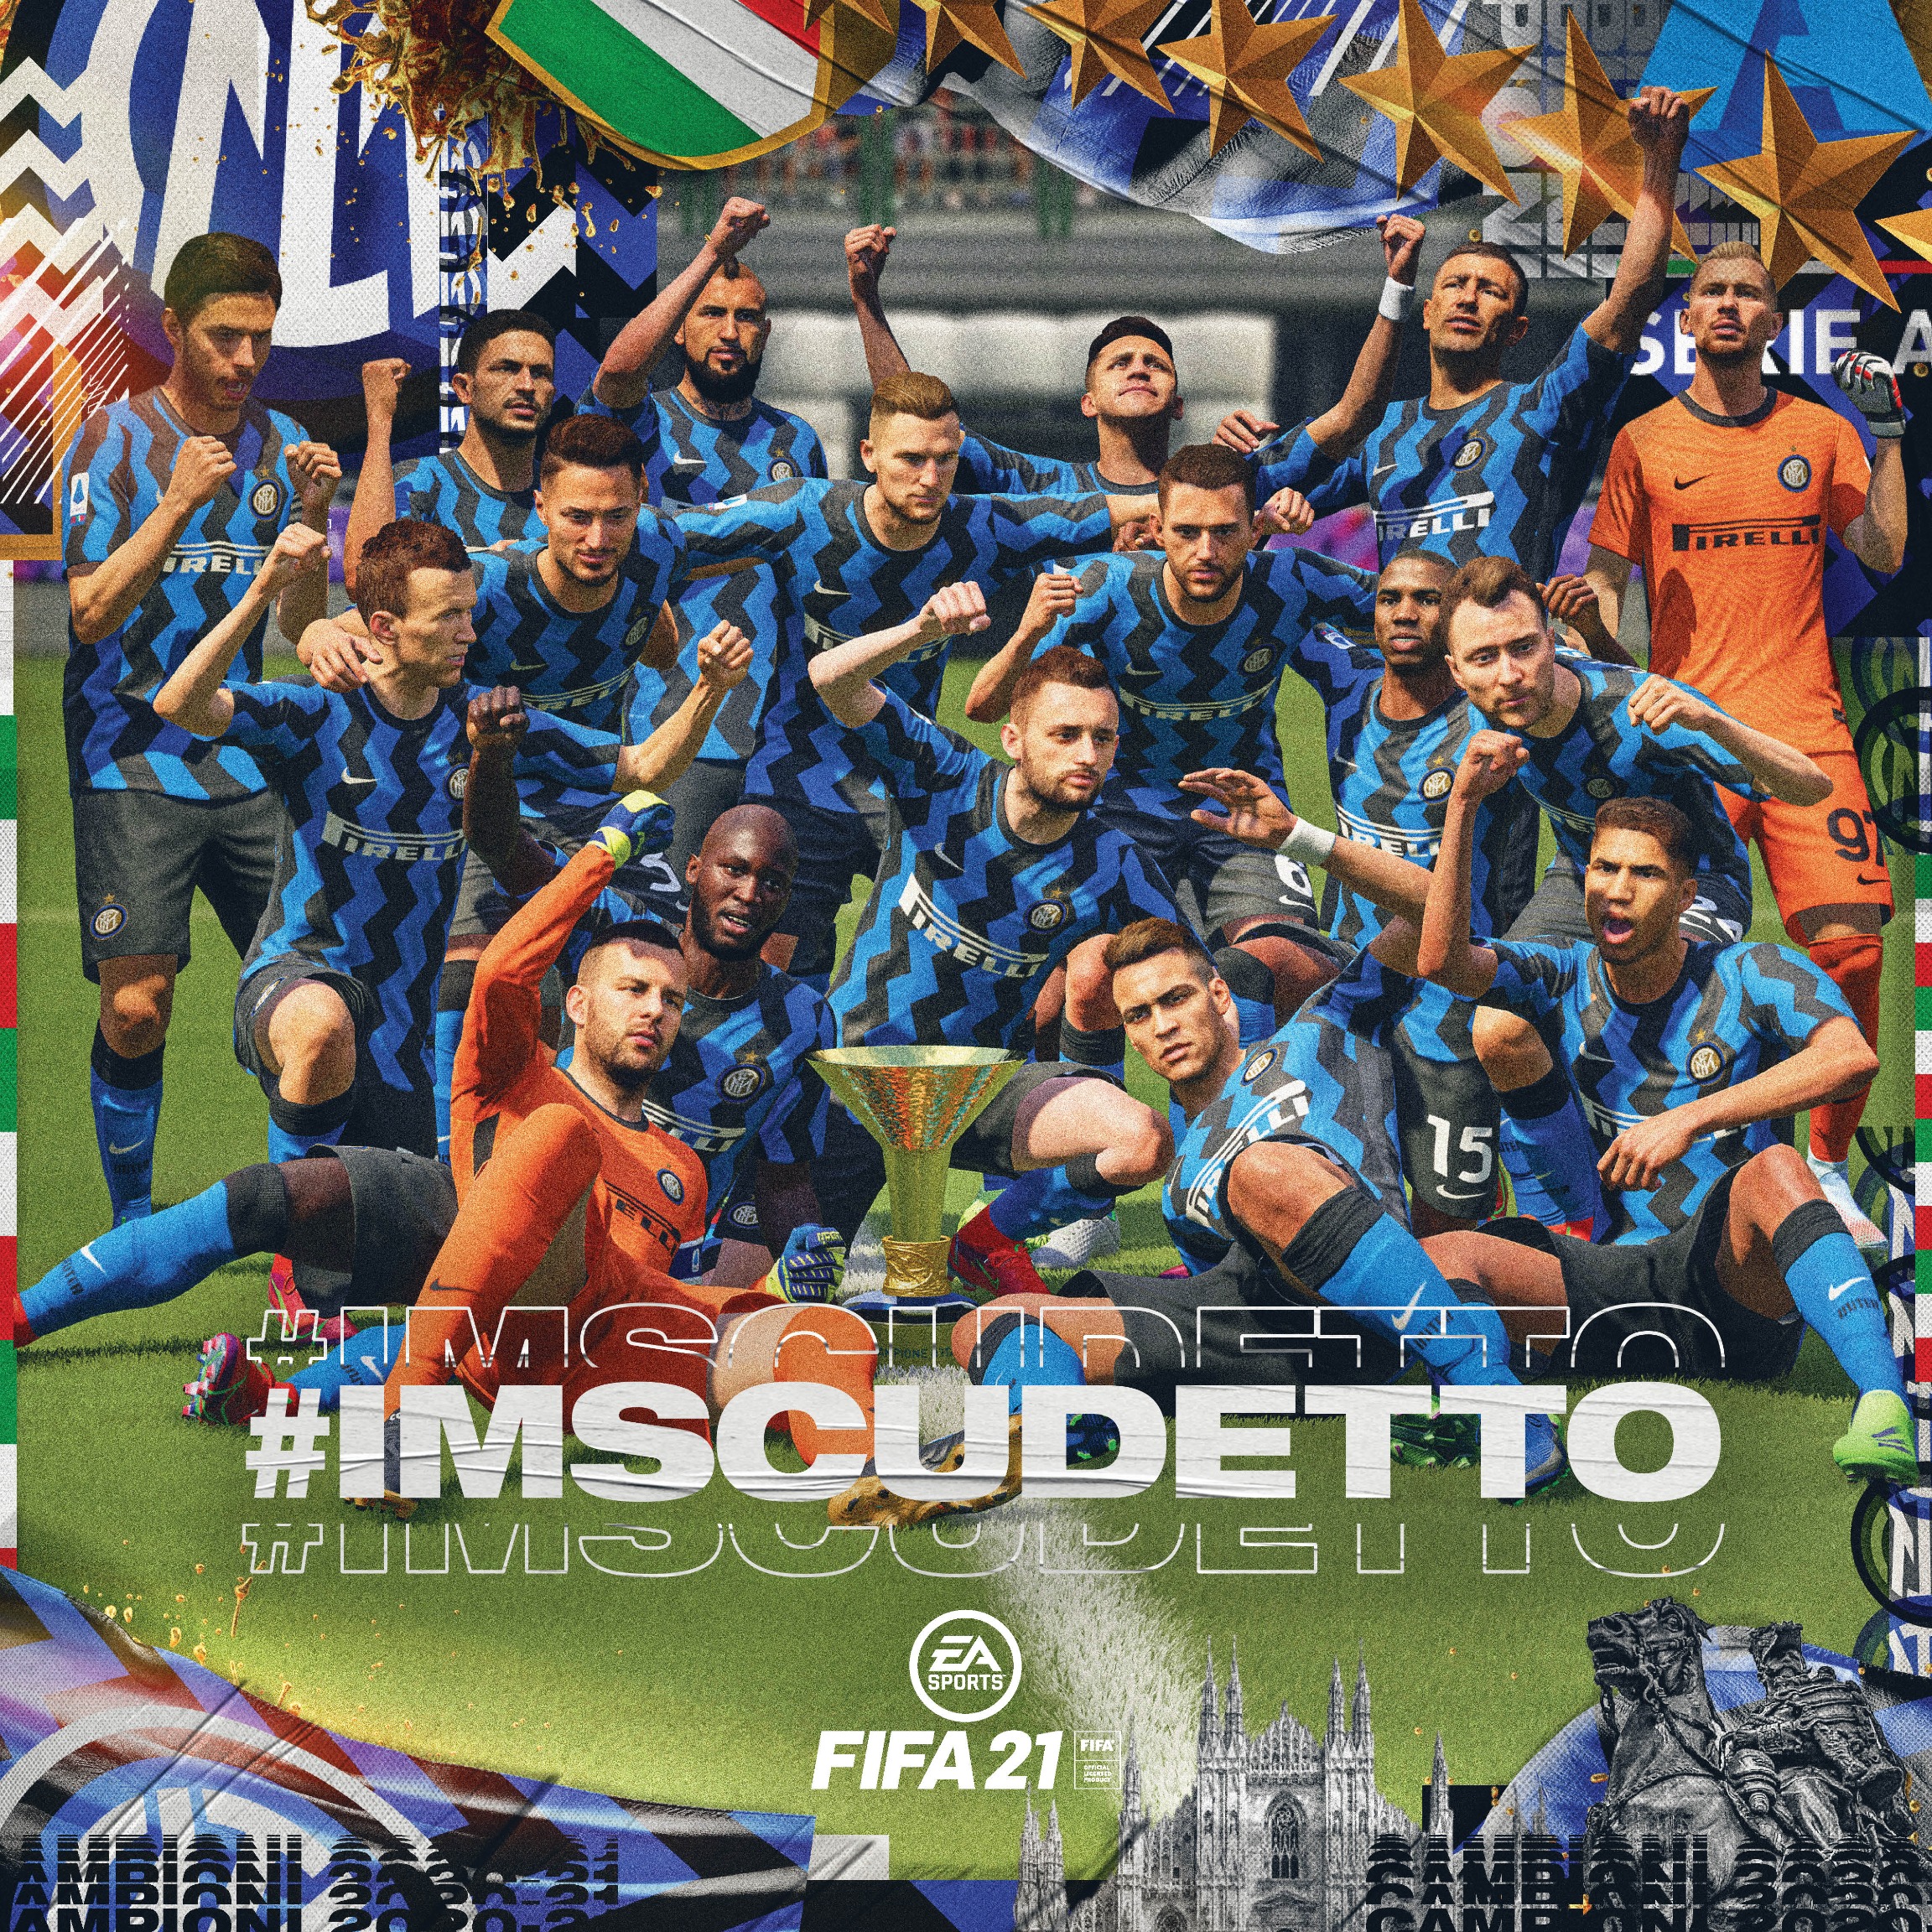 Inter on X: 🔥 CAMPIONI D'ITALIA 🔥 2020/21 @SerieA Champions 💪  #IMScudetto 🔵⚫ #FORZAINTER @EASPORTSFIFA  / X